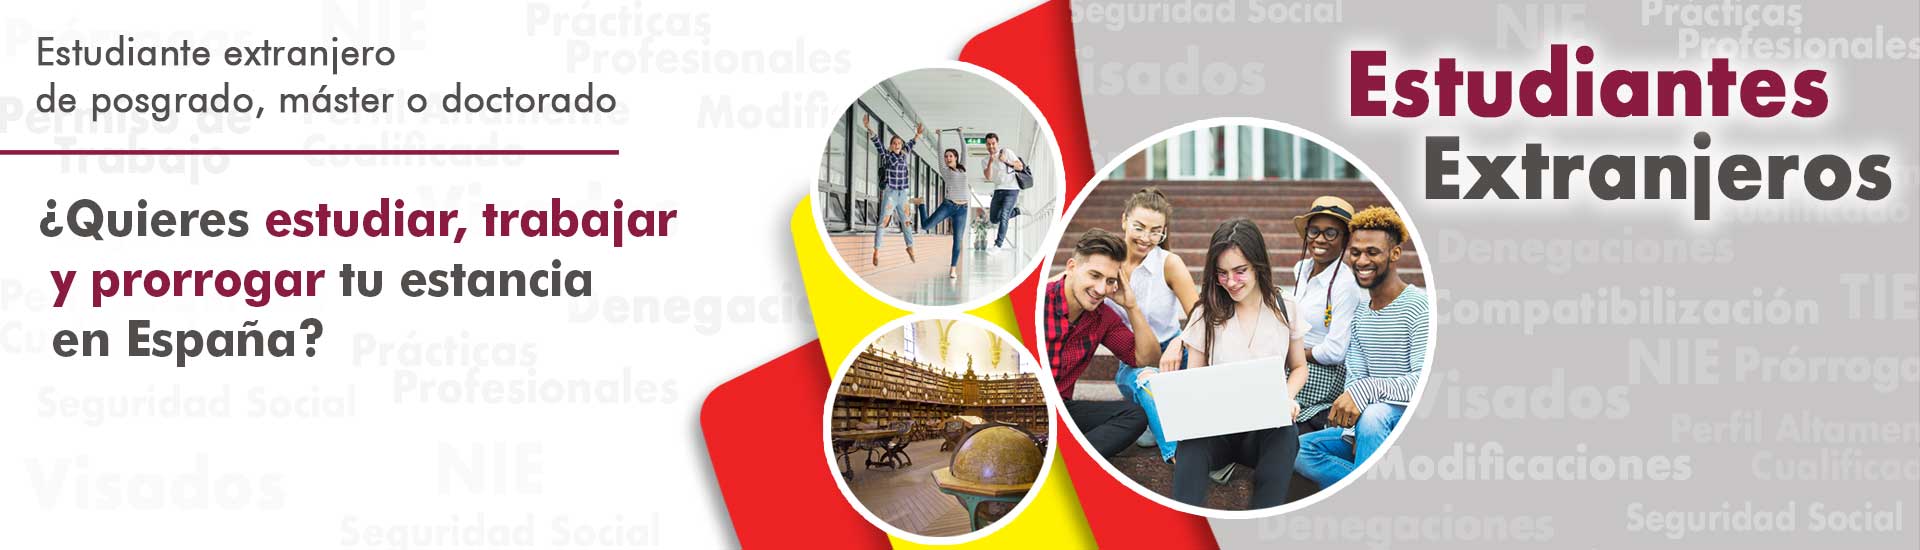 Estudiantes extranjeros residencia España Habeas Legal - Abogados Internacionales especializados en Extranjería, Inmigración y Laboral